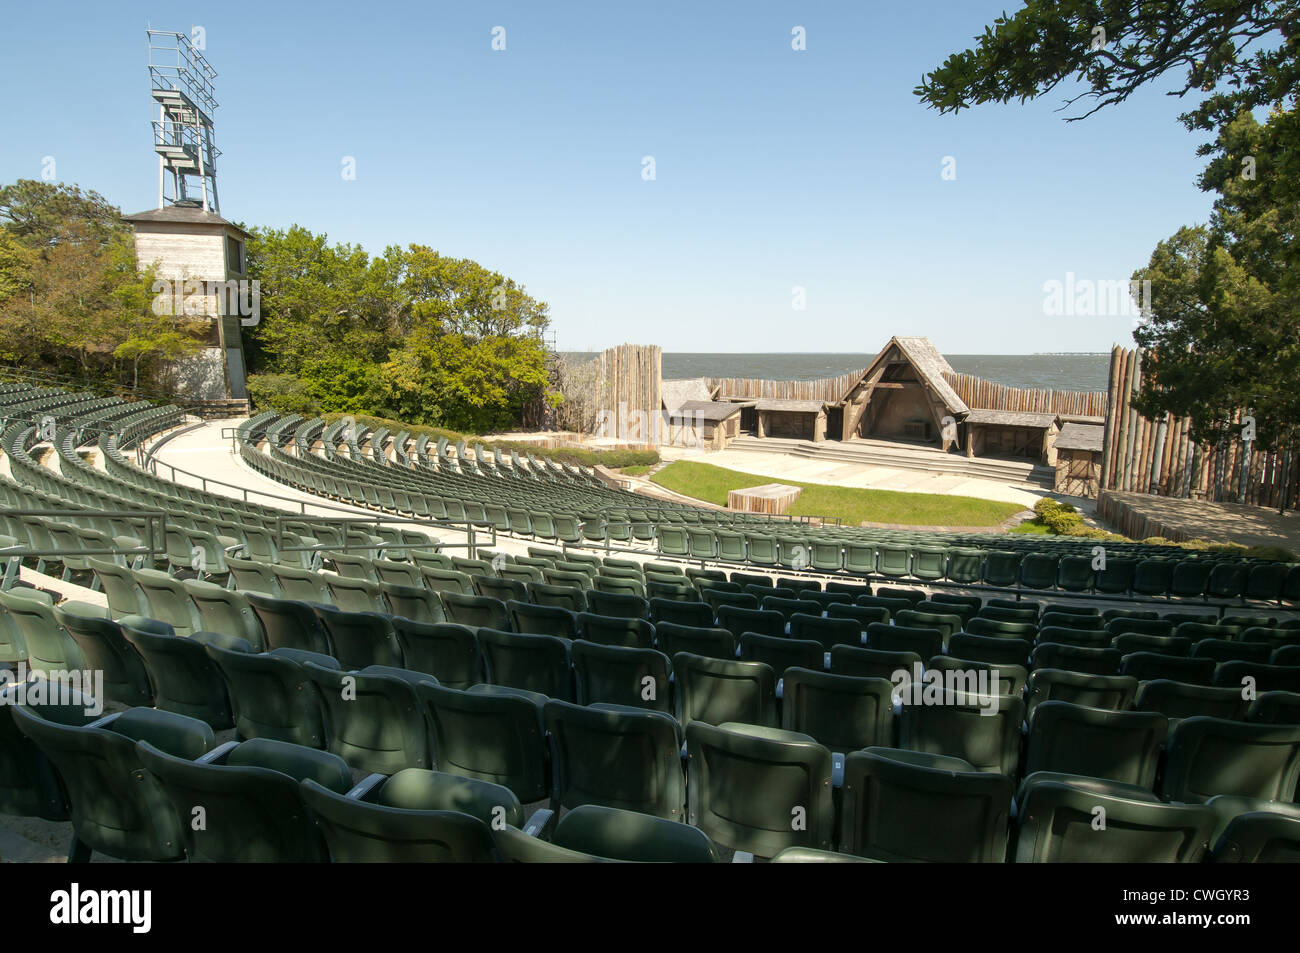 Die Kolonie verloren Outdoor-Drama spielen historische Waterfront Theater Manteo Roanoke Island North Carolina Outer Banks Stockfoto